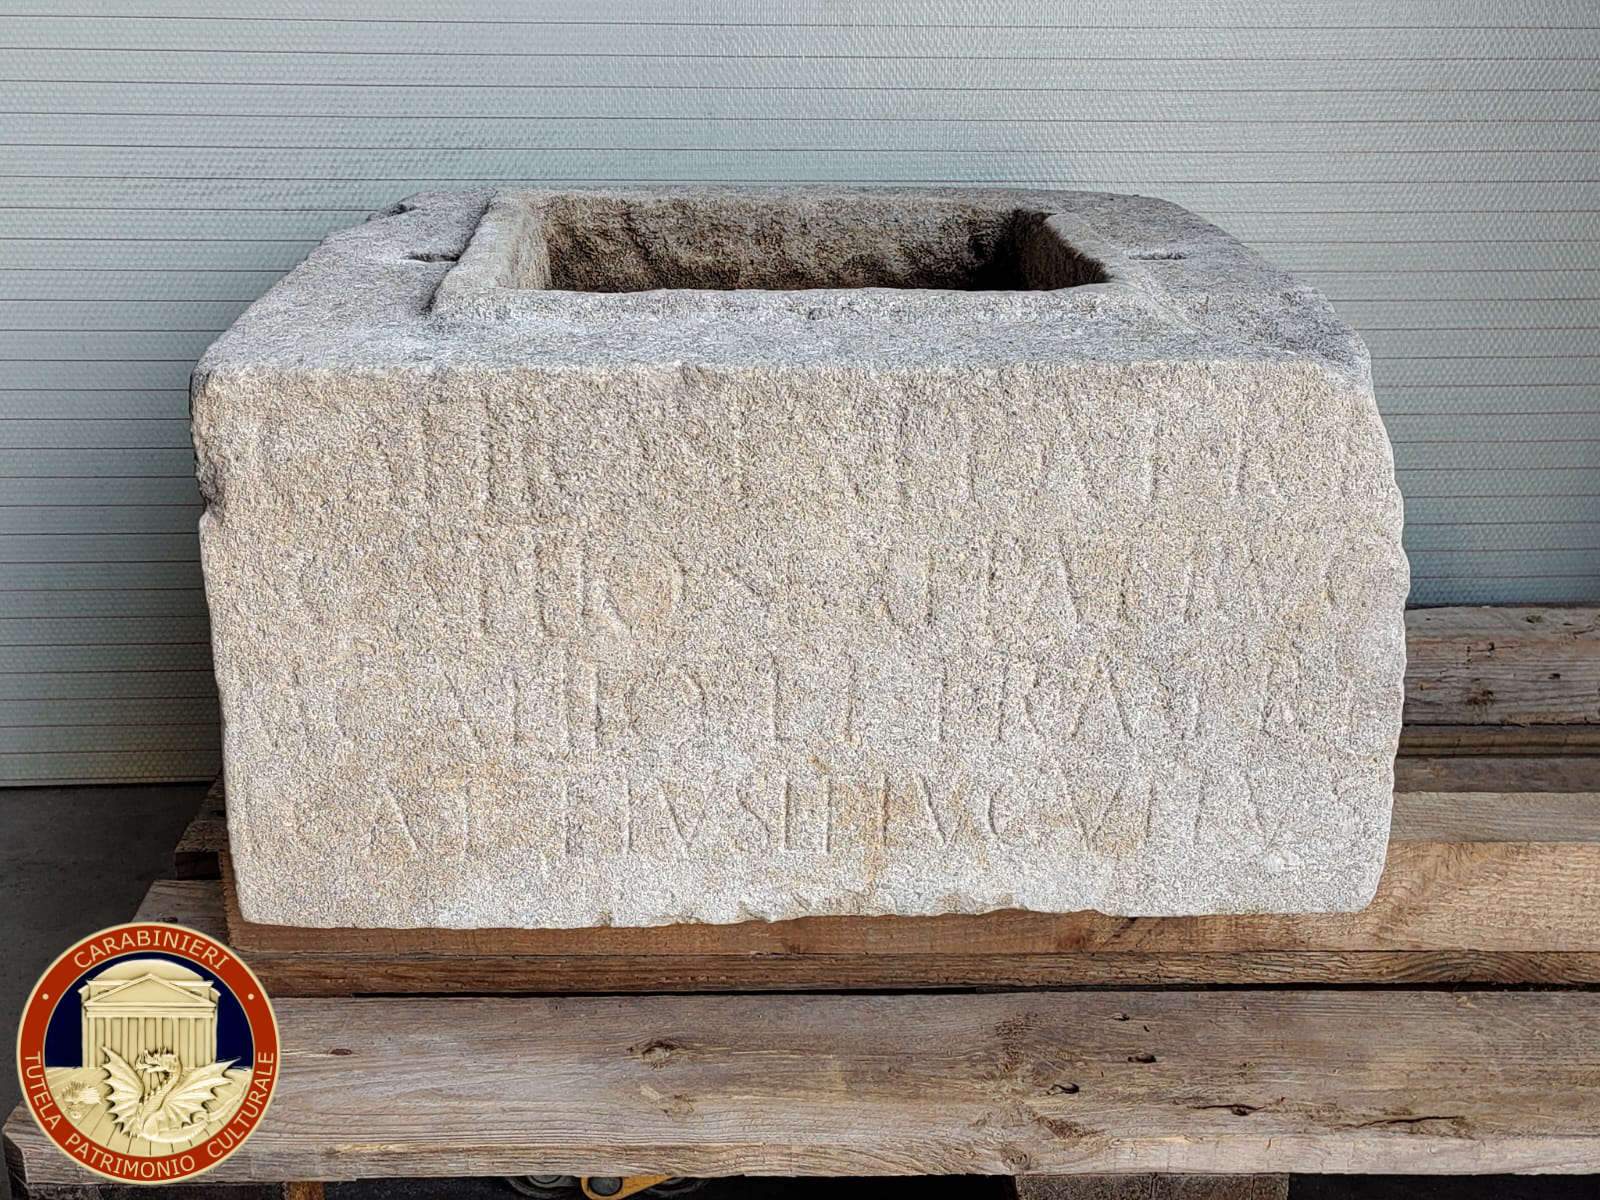 Carabinieri übergeben eine wertvolle römische Urne an das Nationalmuseum Concordia